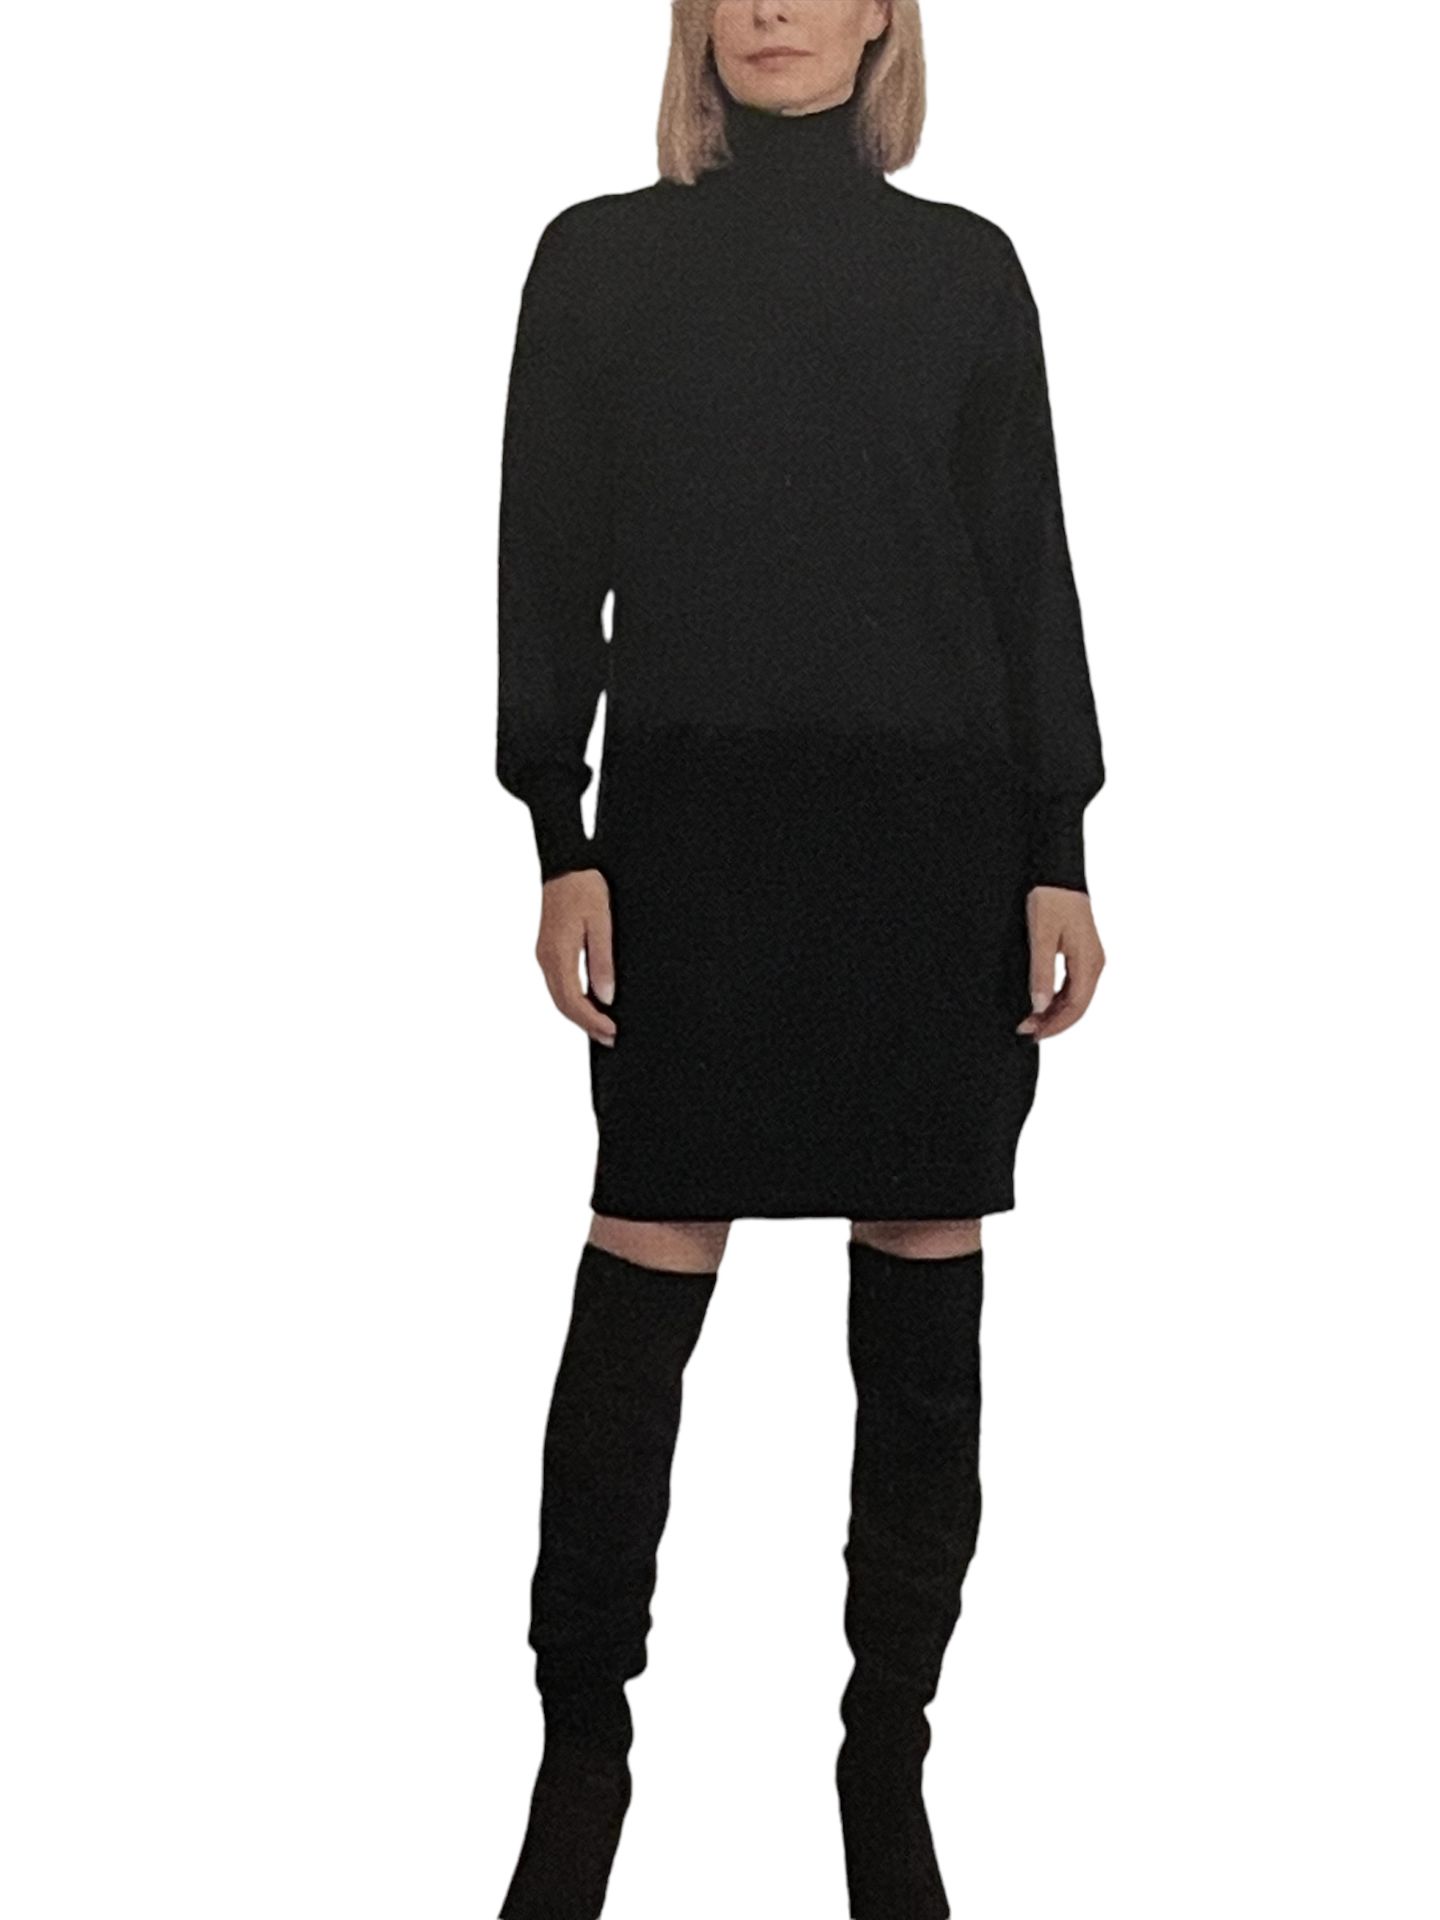 Designer Badgley Mischka Lightweight Fine Knitted Stretchy Jumper Dress UK 14L RRP £17.99 - Image 5 of 8